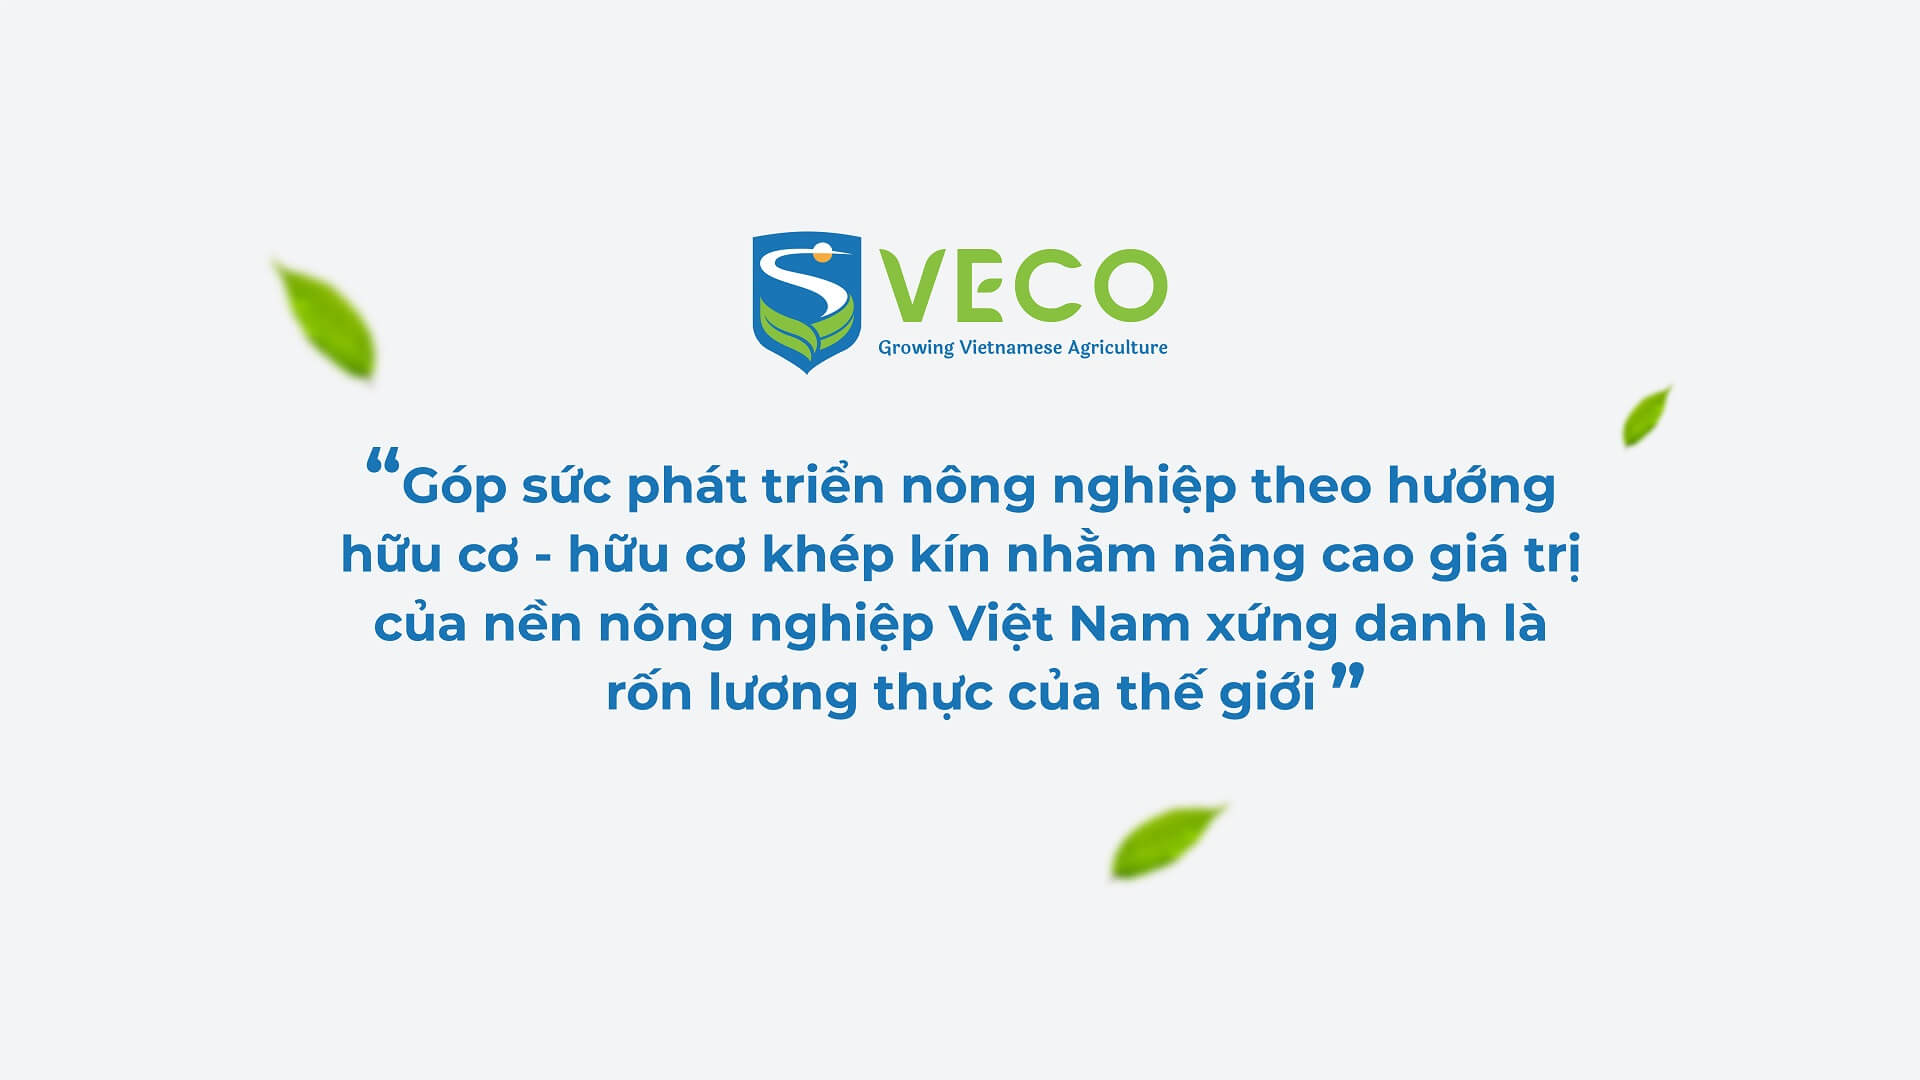 Dự án thiết kế bộ nhận diện thương hiệu, thiết kế logo VECO của Sao Kim Branding - 5